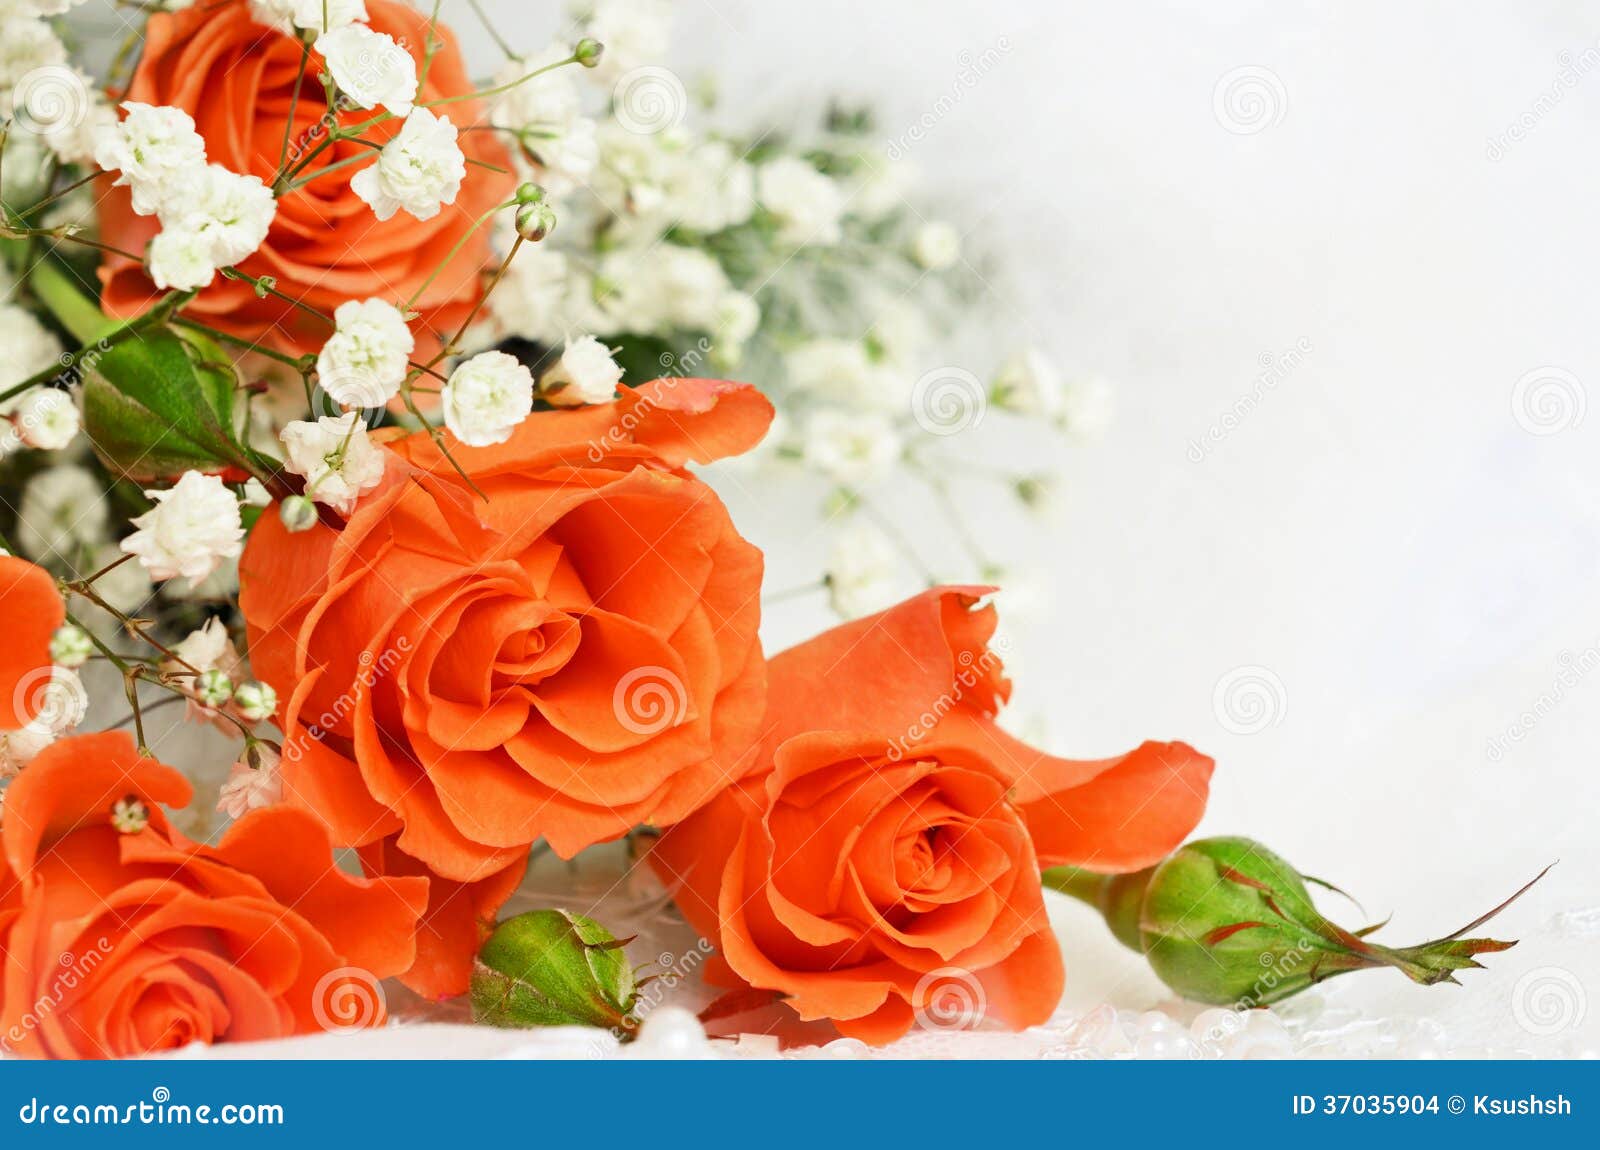 Hoa hồng cam trên nền trắng ảnh đồng, bản sao và thiệp sẽ là sự lựa chọn tuyệt vời để trang trí cho không gian sống của bạn hoặc làm quà tặng cho những người thân yêu. Hãy chiêm ngưỡng sự tinh tế và quyến rũ của chúng ngay hôm nay.